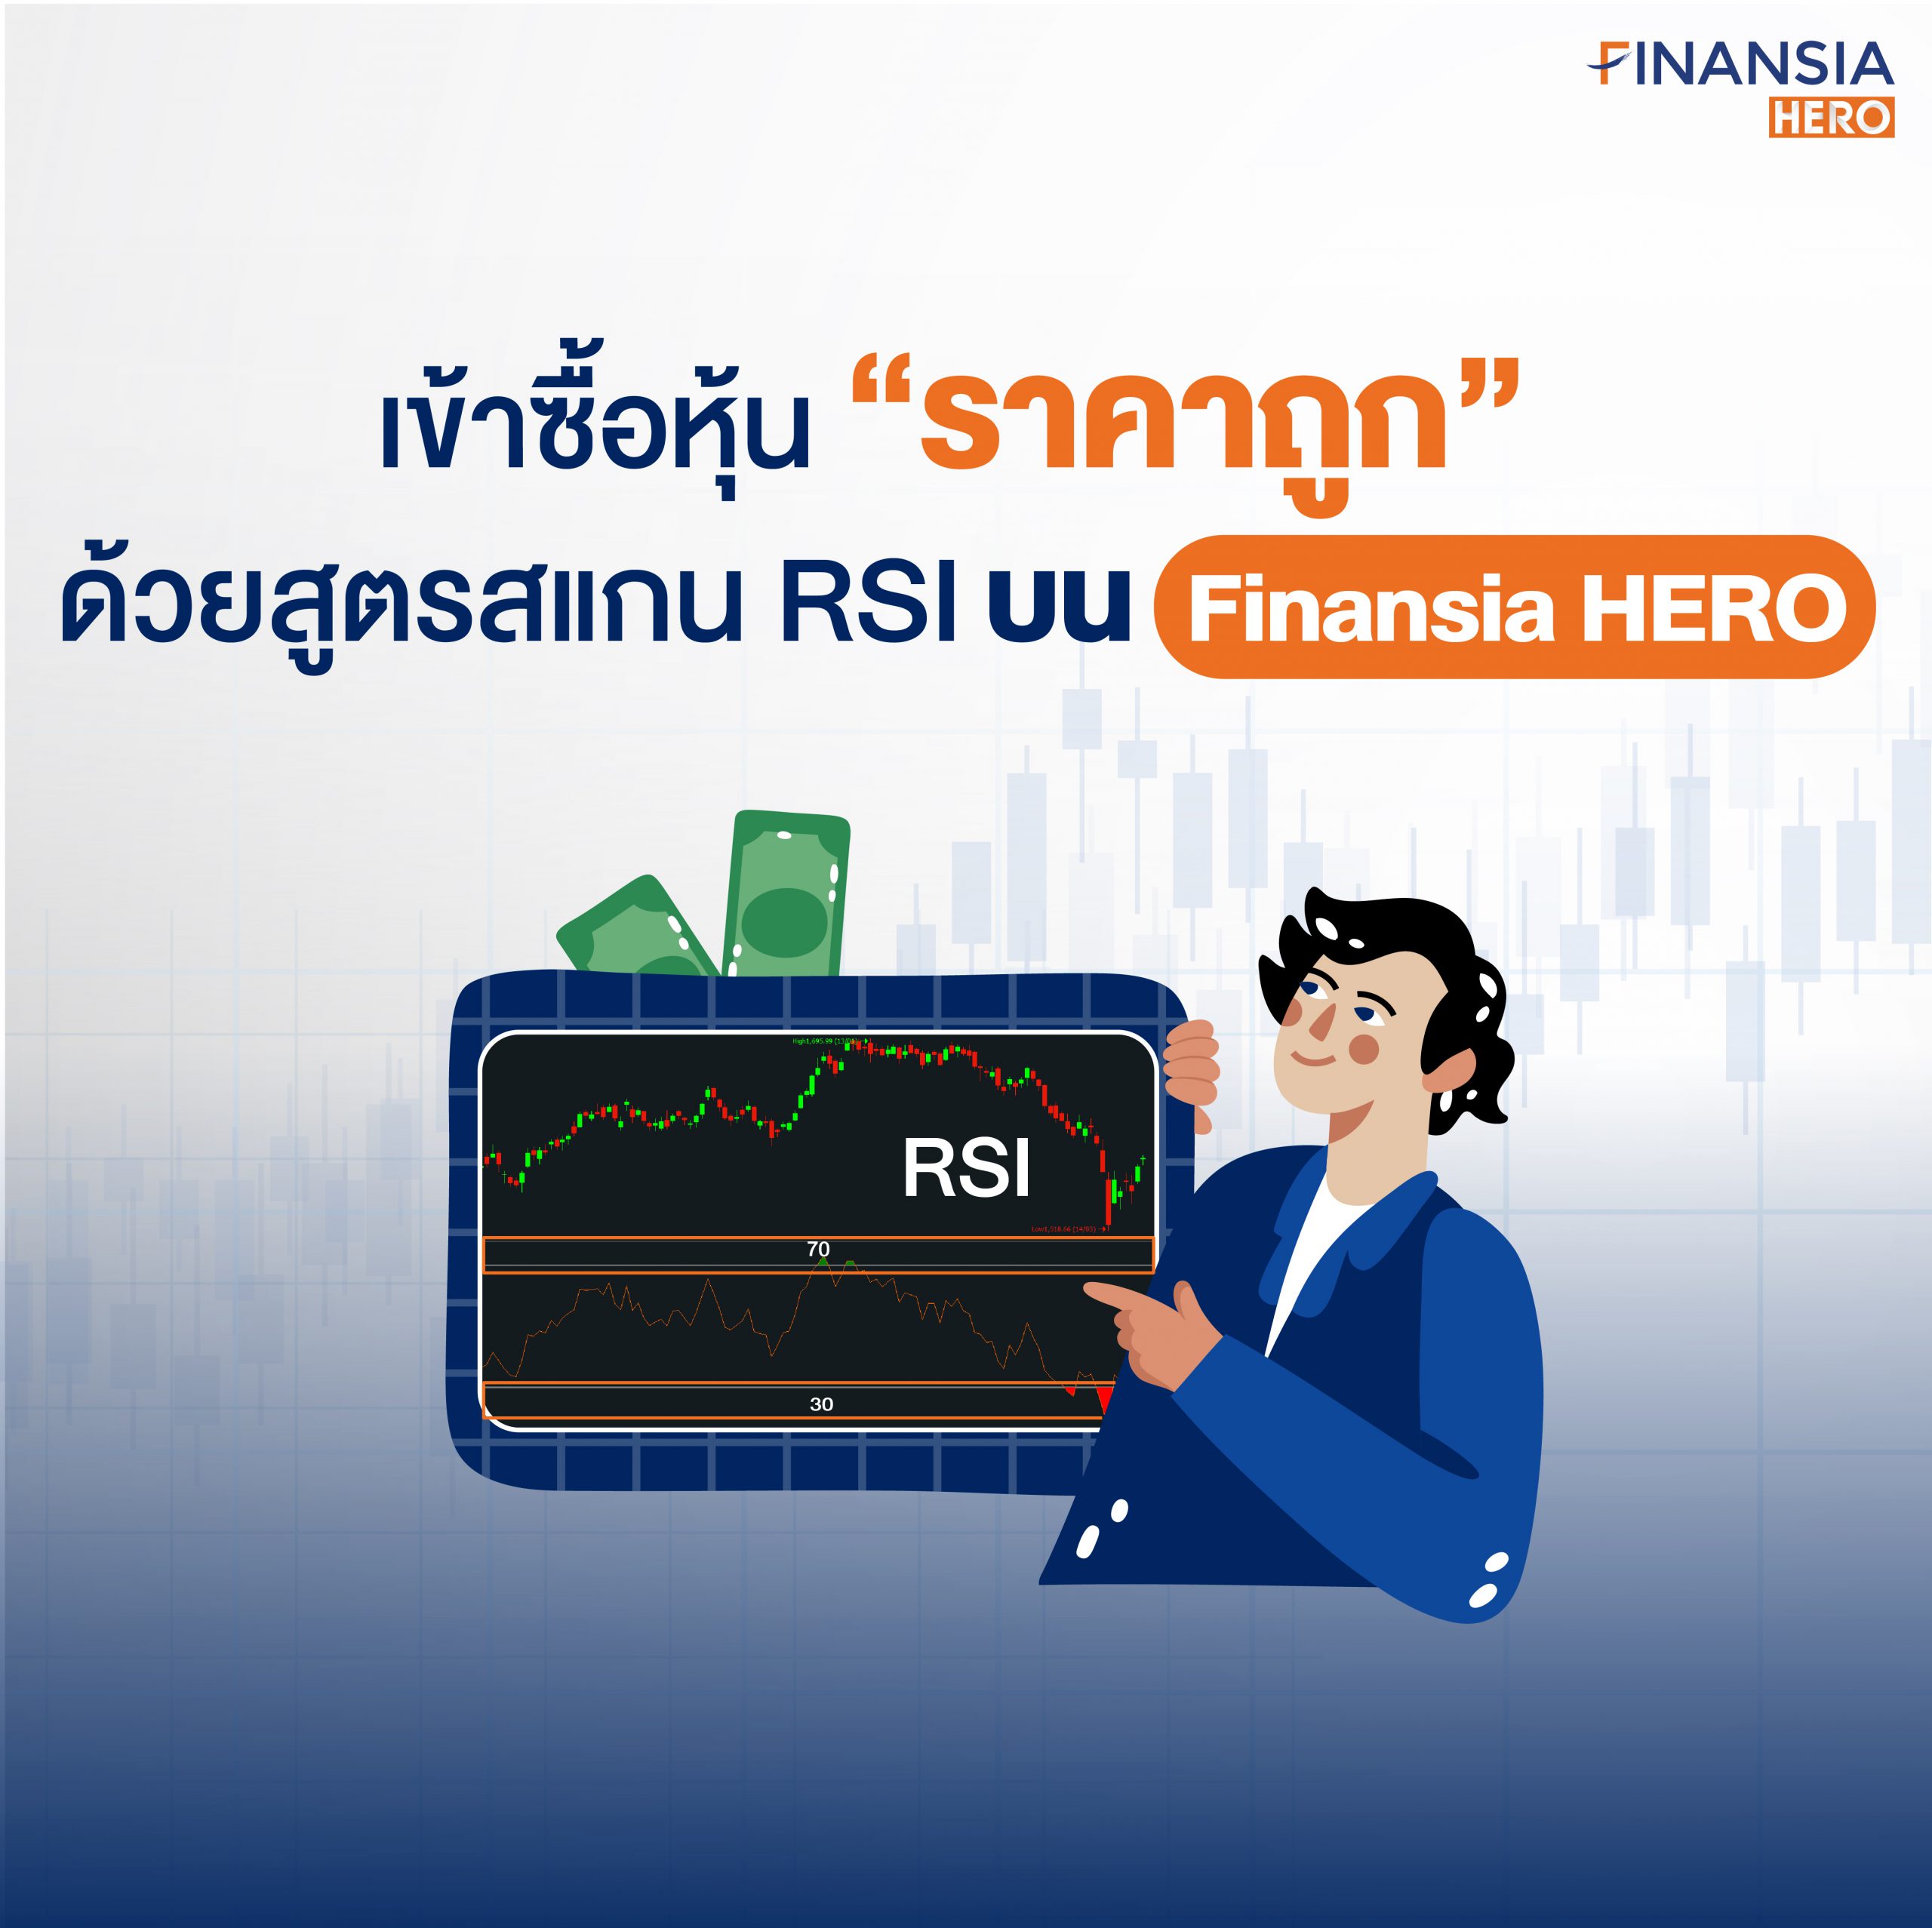 เข้าซื้อหุ้น “ราคาถูก” ด้วยสูตรสแกน RSI โปรแกรมเทรดหุ้น Finansia HERO